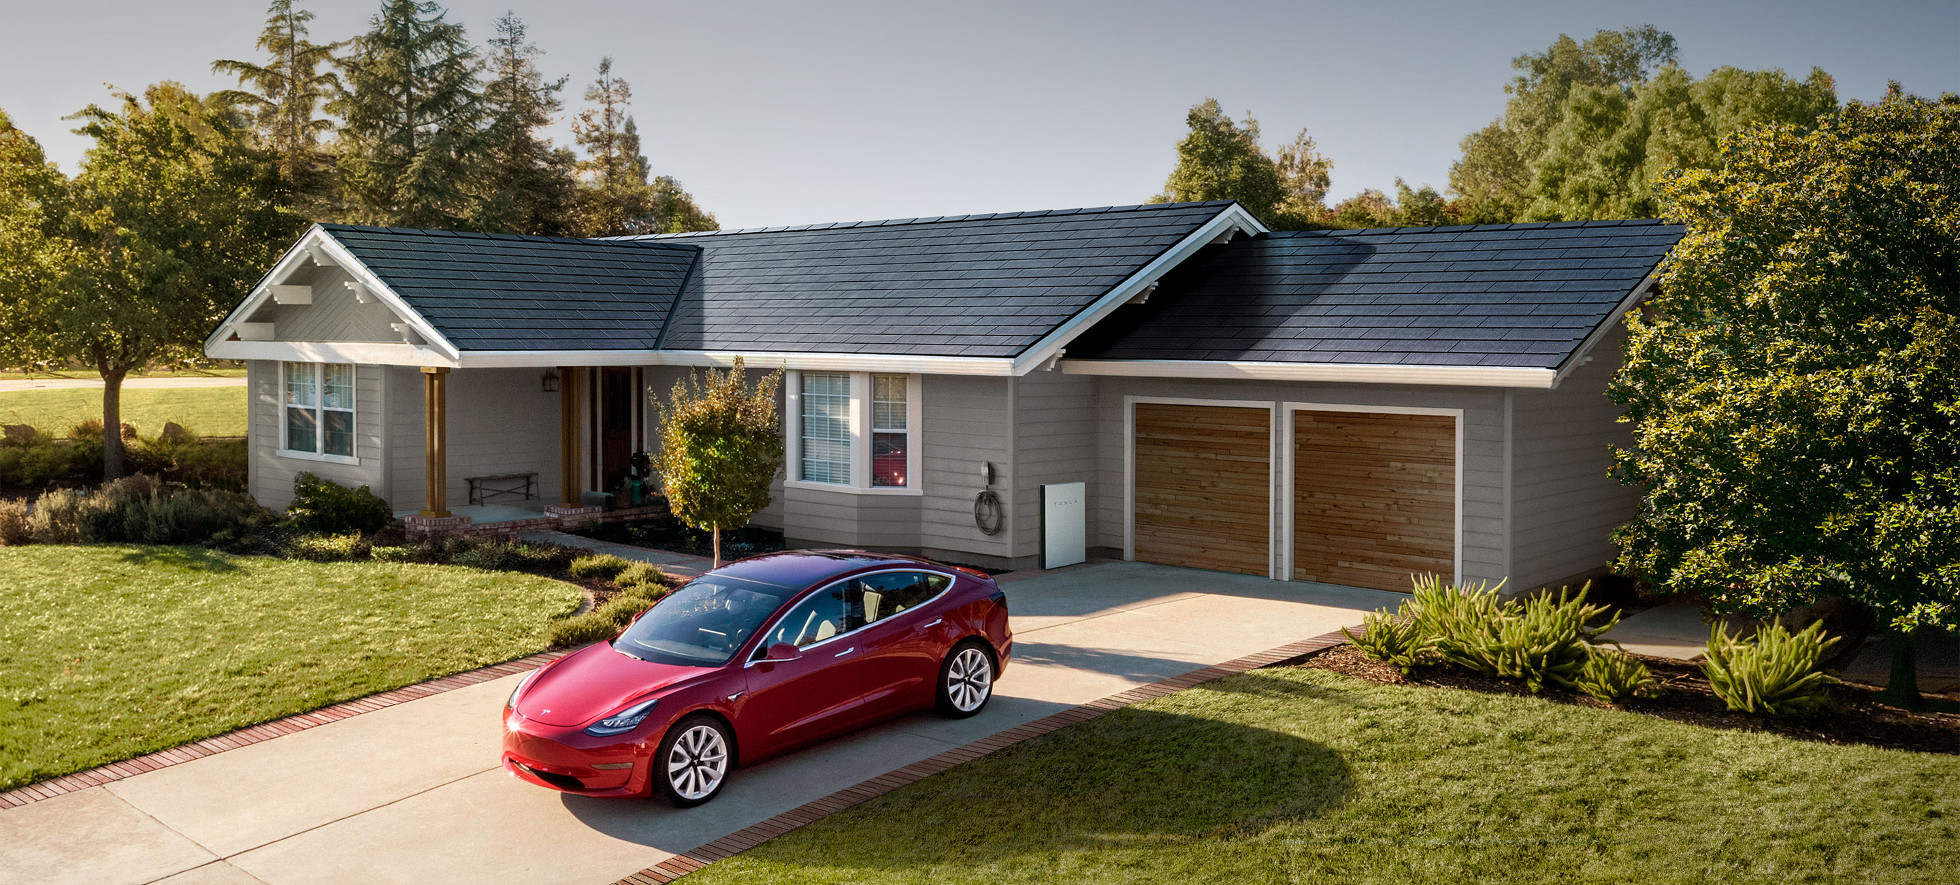 Casa amb les teules Tesla instal·lades, bateria i cotxe